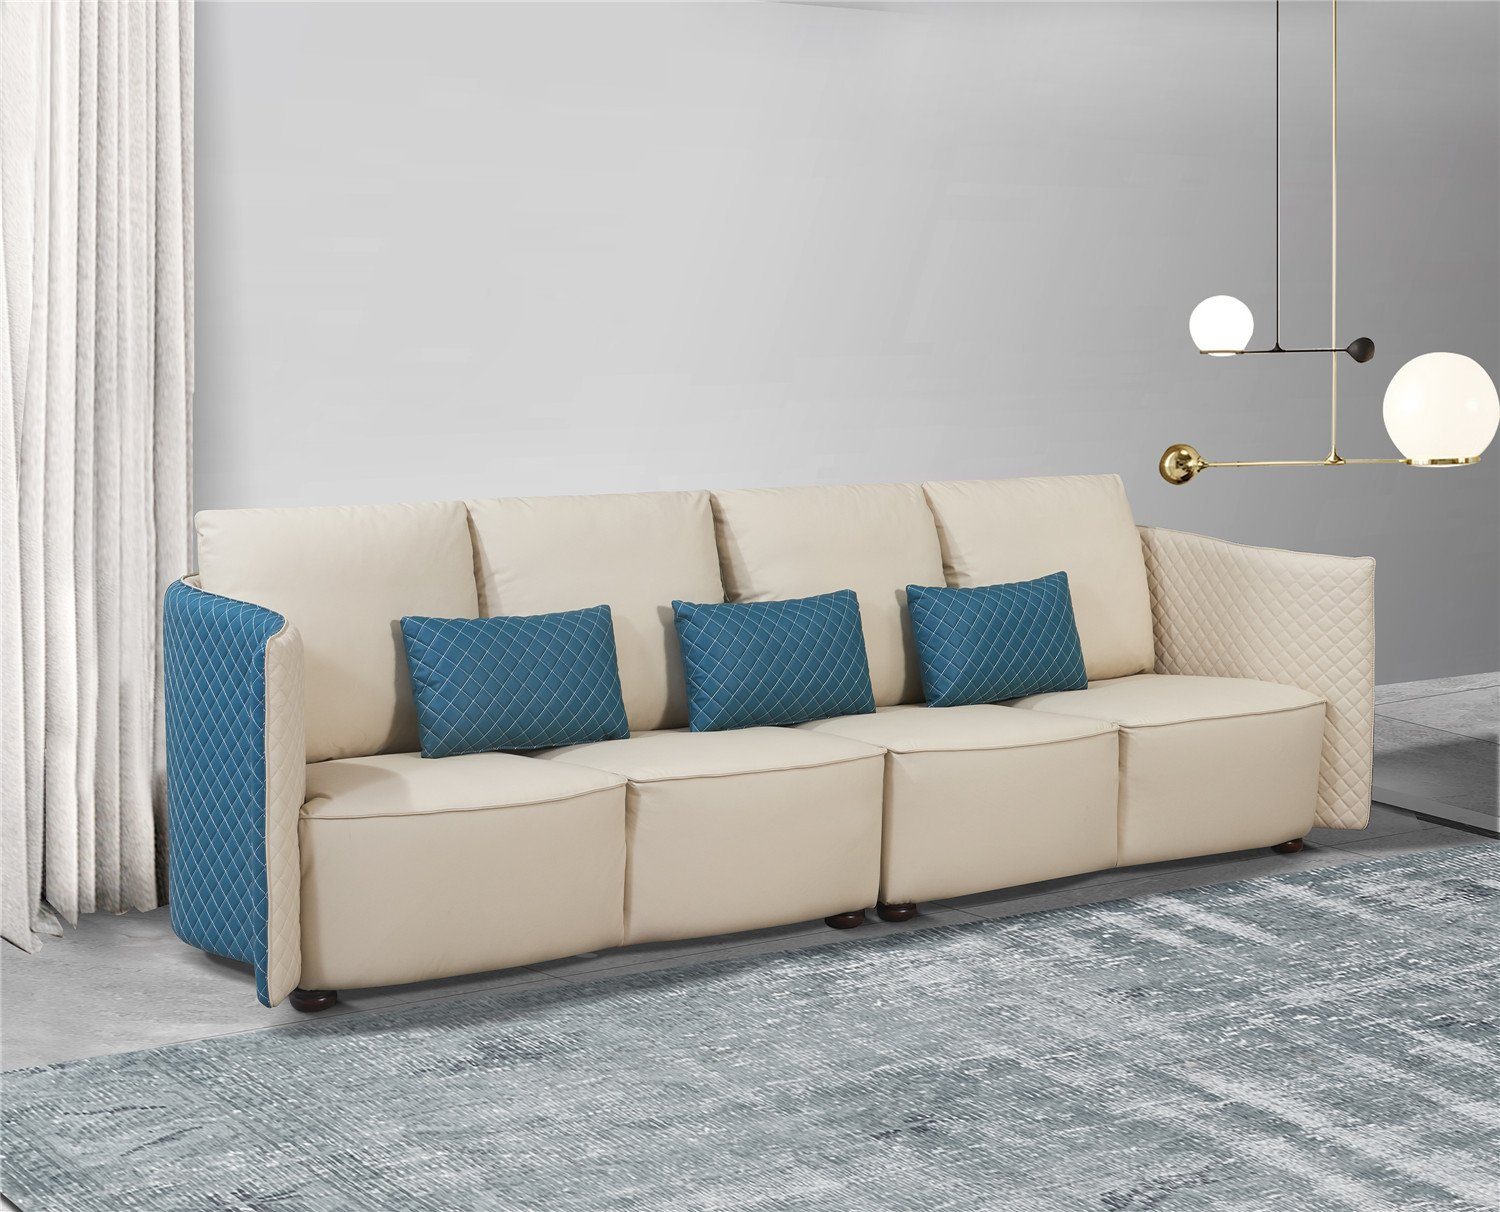 JVmoebel Sofa, Sofa 4 Sitzer Sofas Luxus Polstersofas Stoffsofas Luxus Designer Couch | Alle Sofas